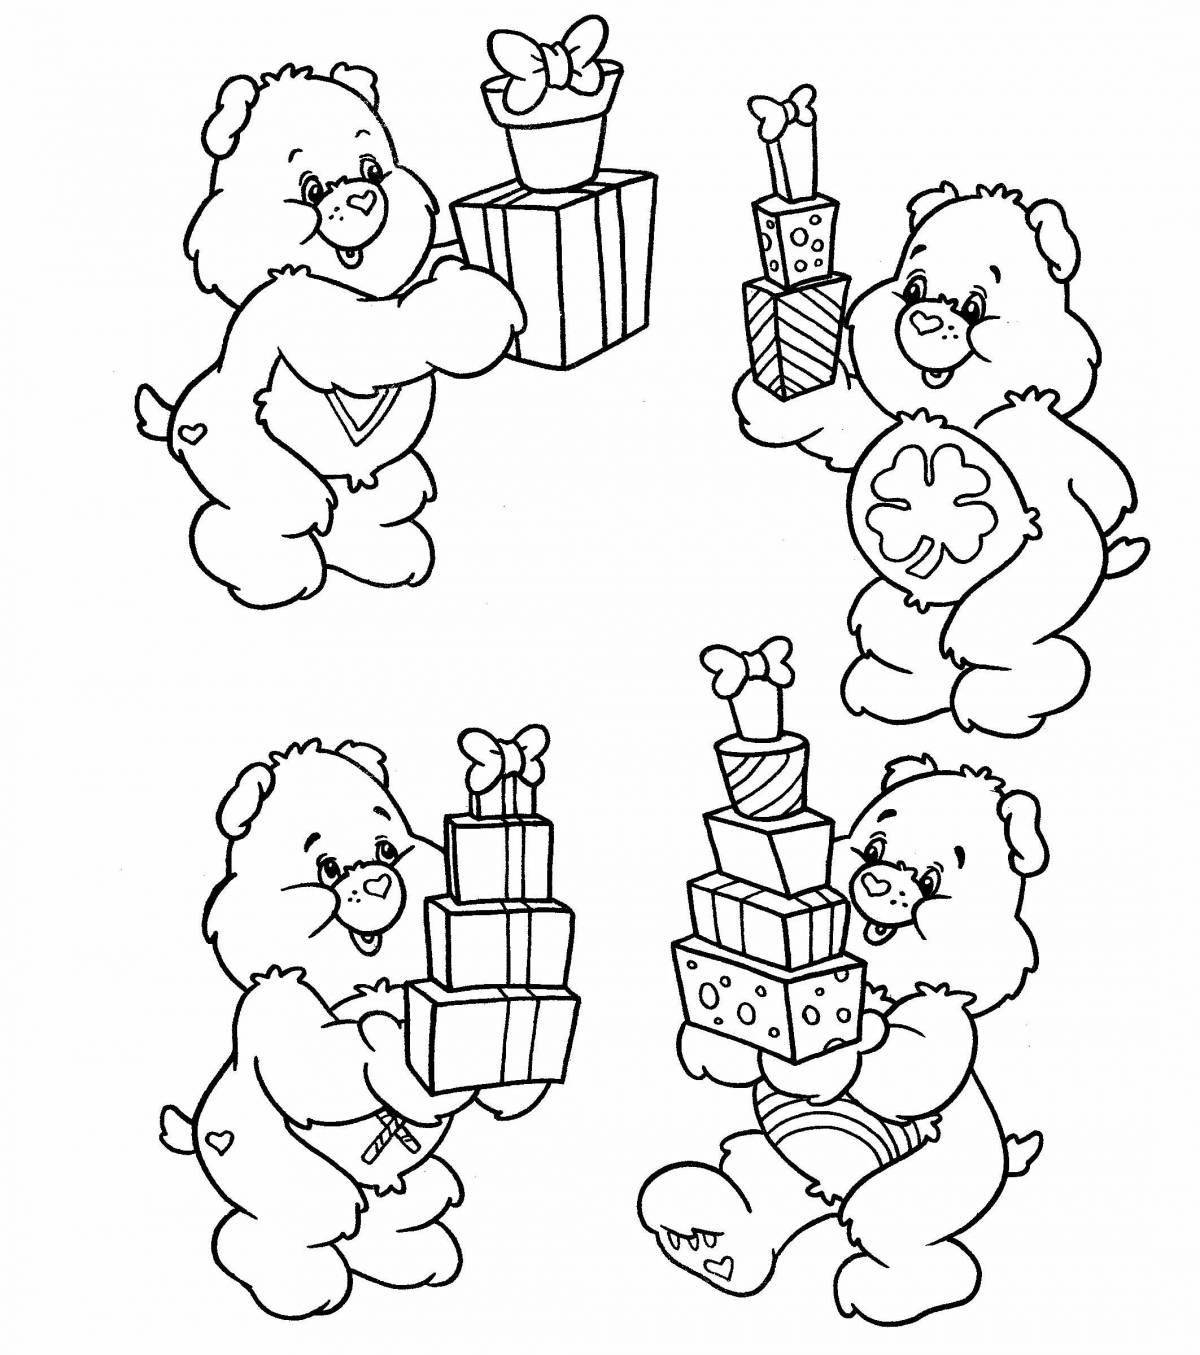 Fascinating bear coloring